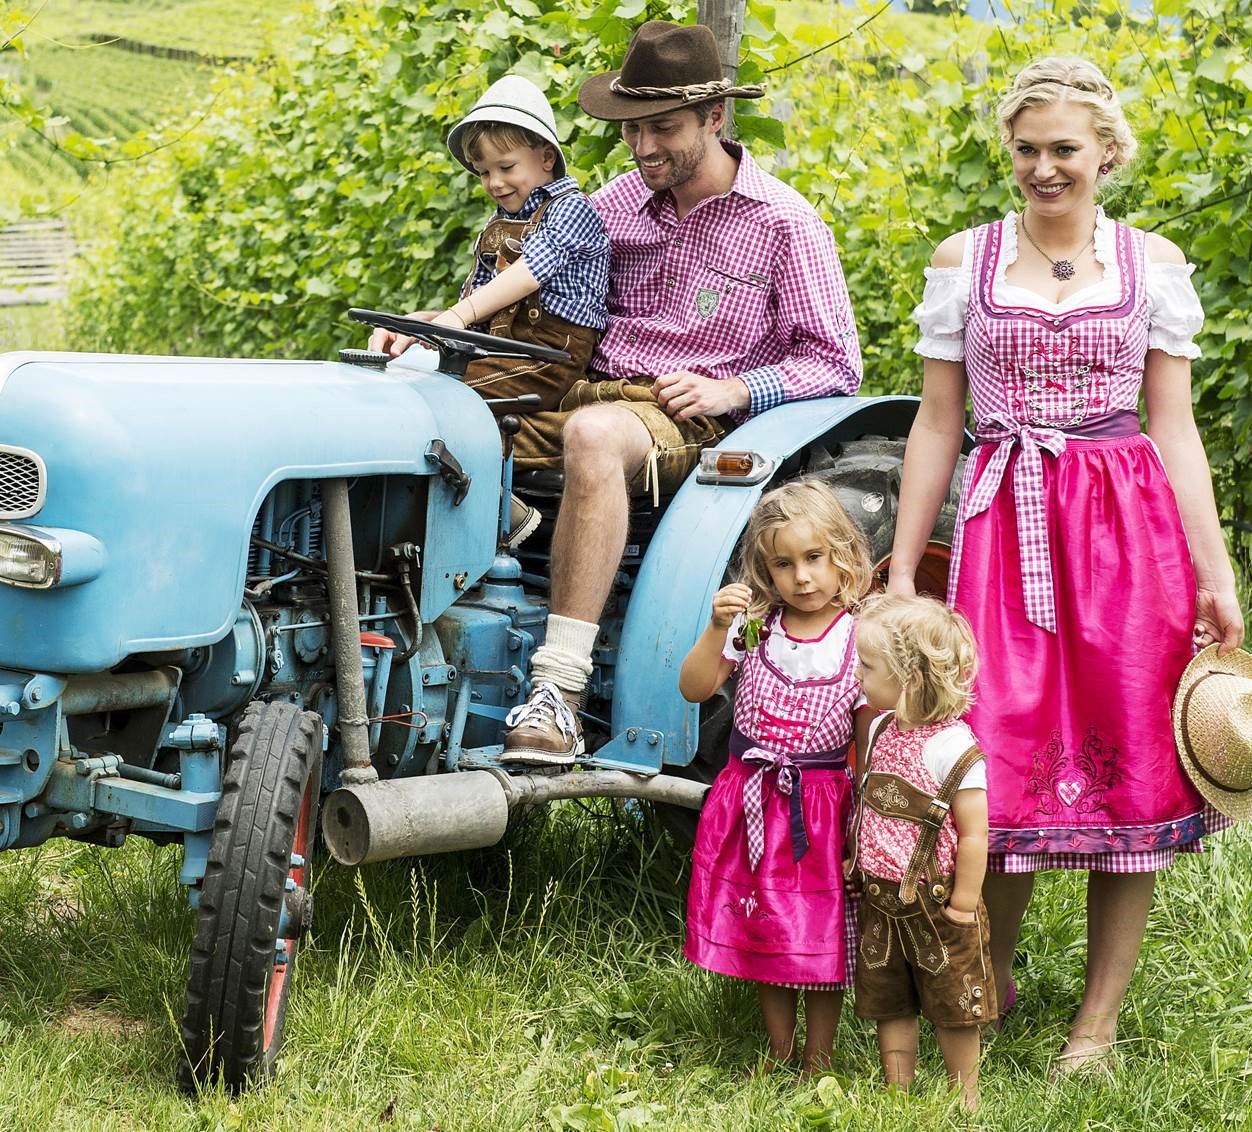 Traktorfamilie in Tracht